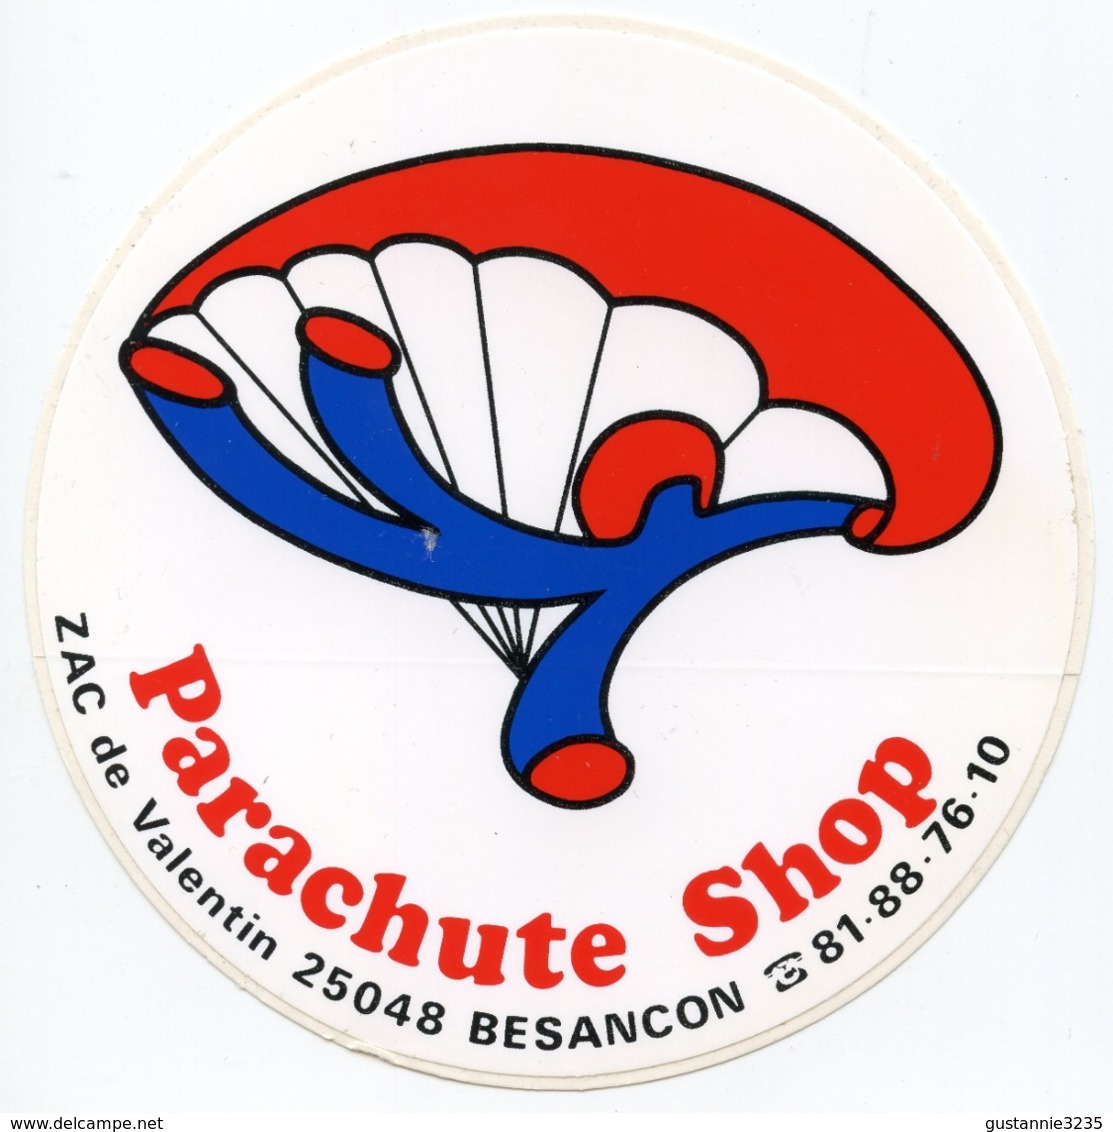 AUTOCOLLANT PARACHUTE SHOP 25048 BESANCON - Stickers